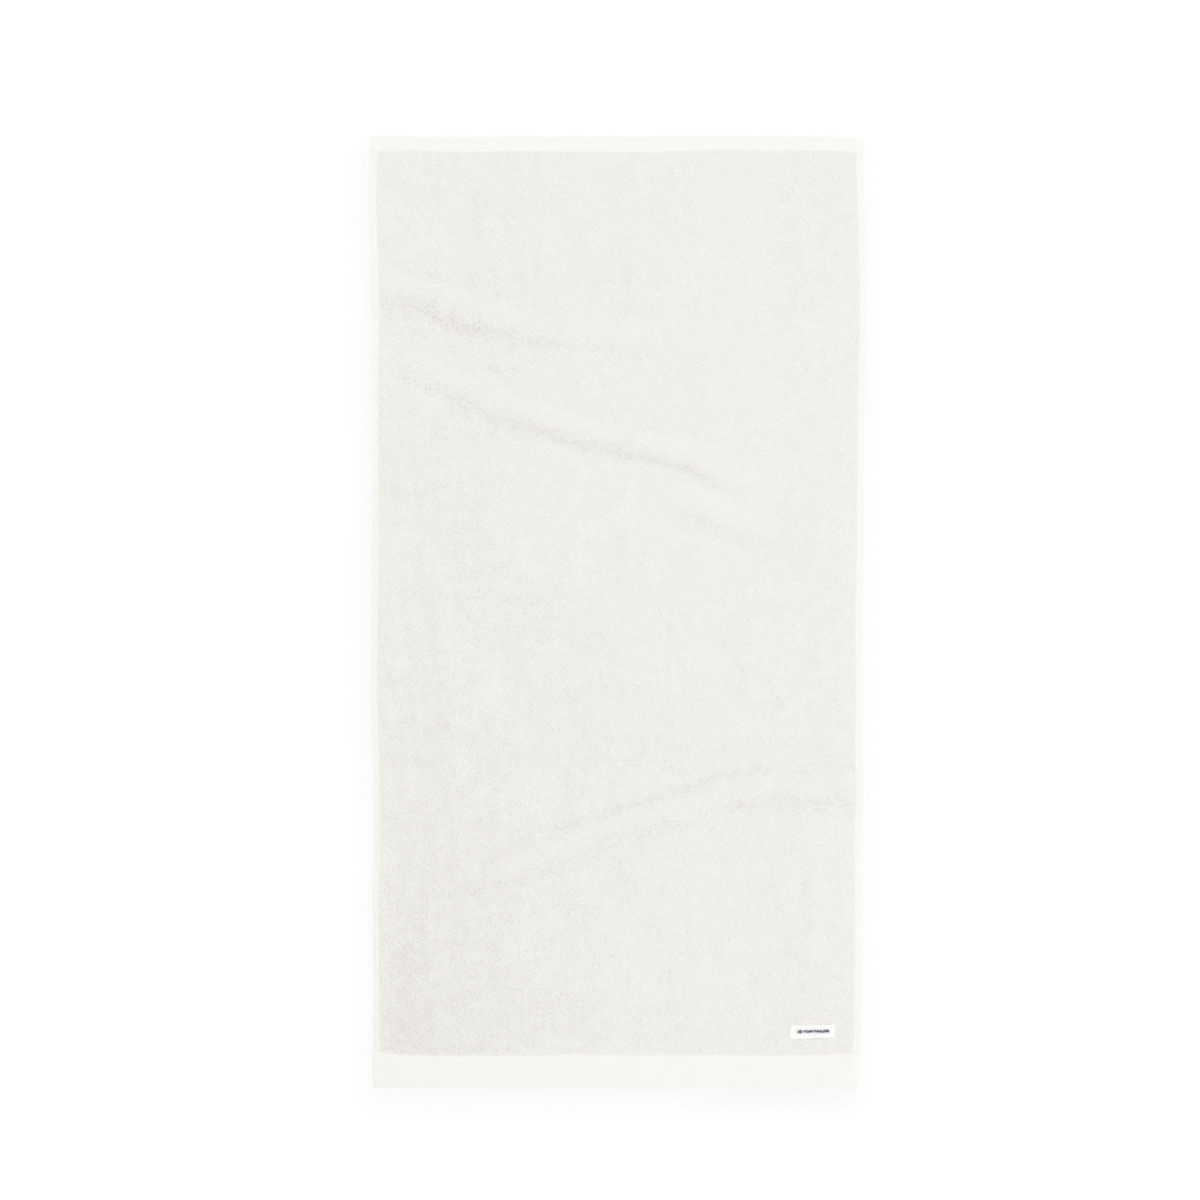 Tom Tailor Crisp White törölköző, 50 x 100 cm